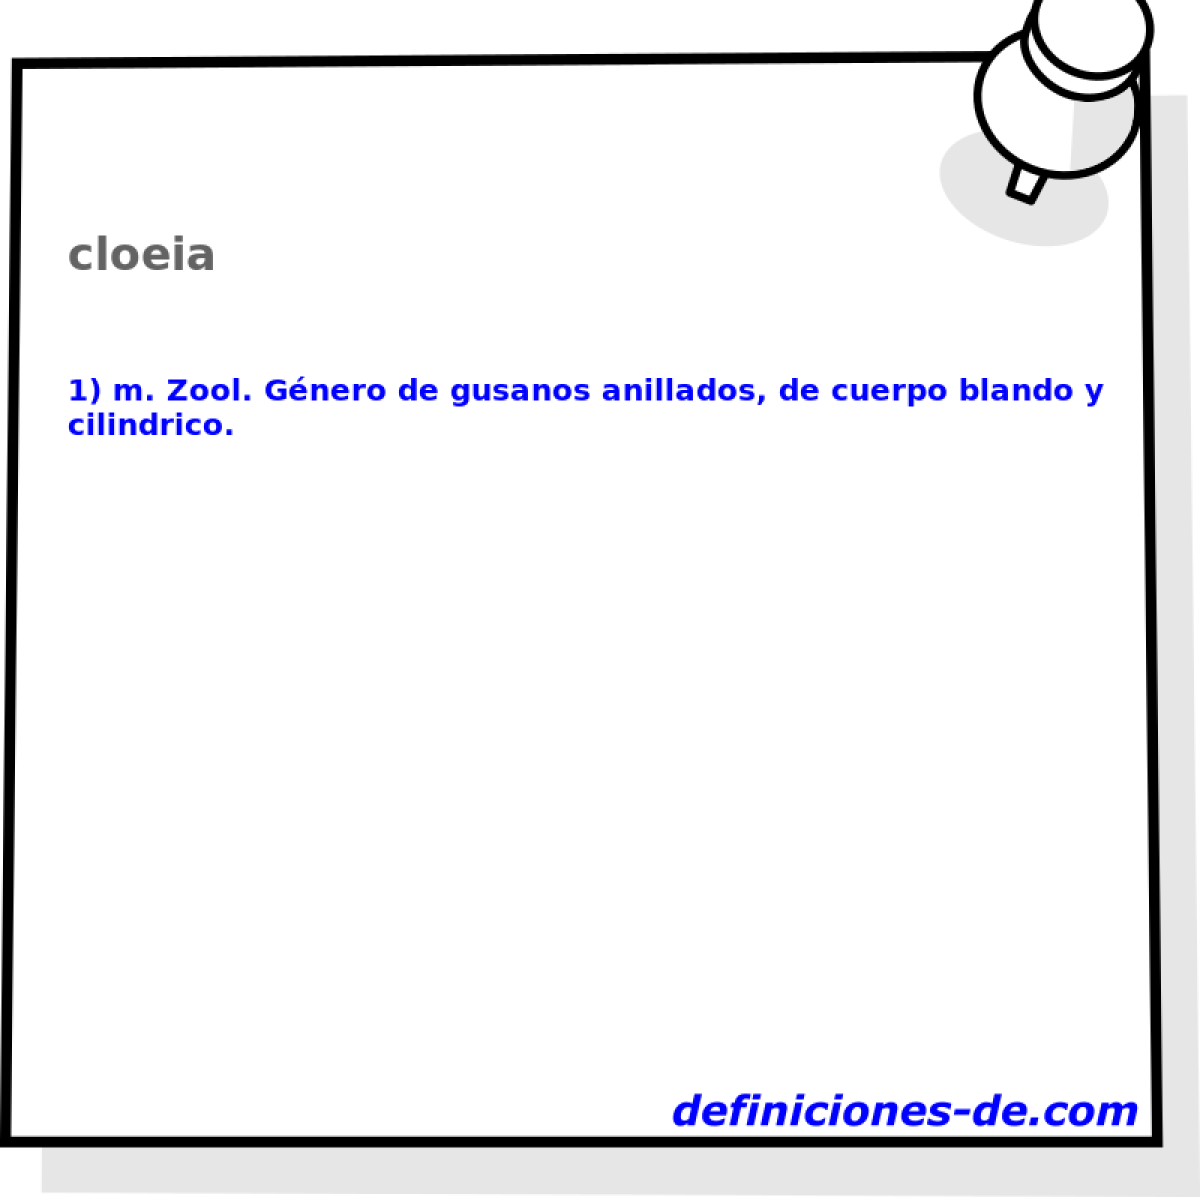 cloeia 